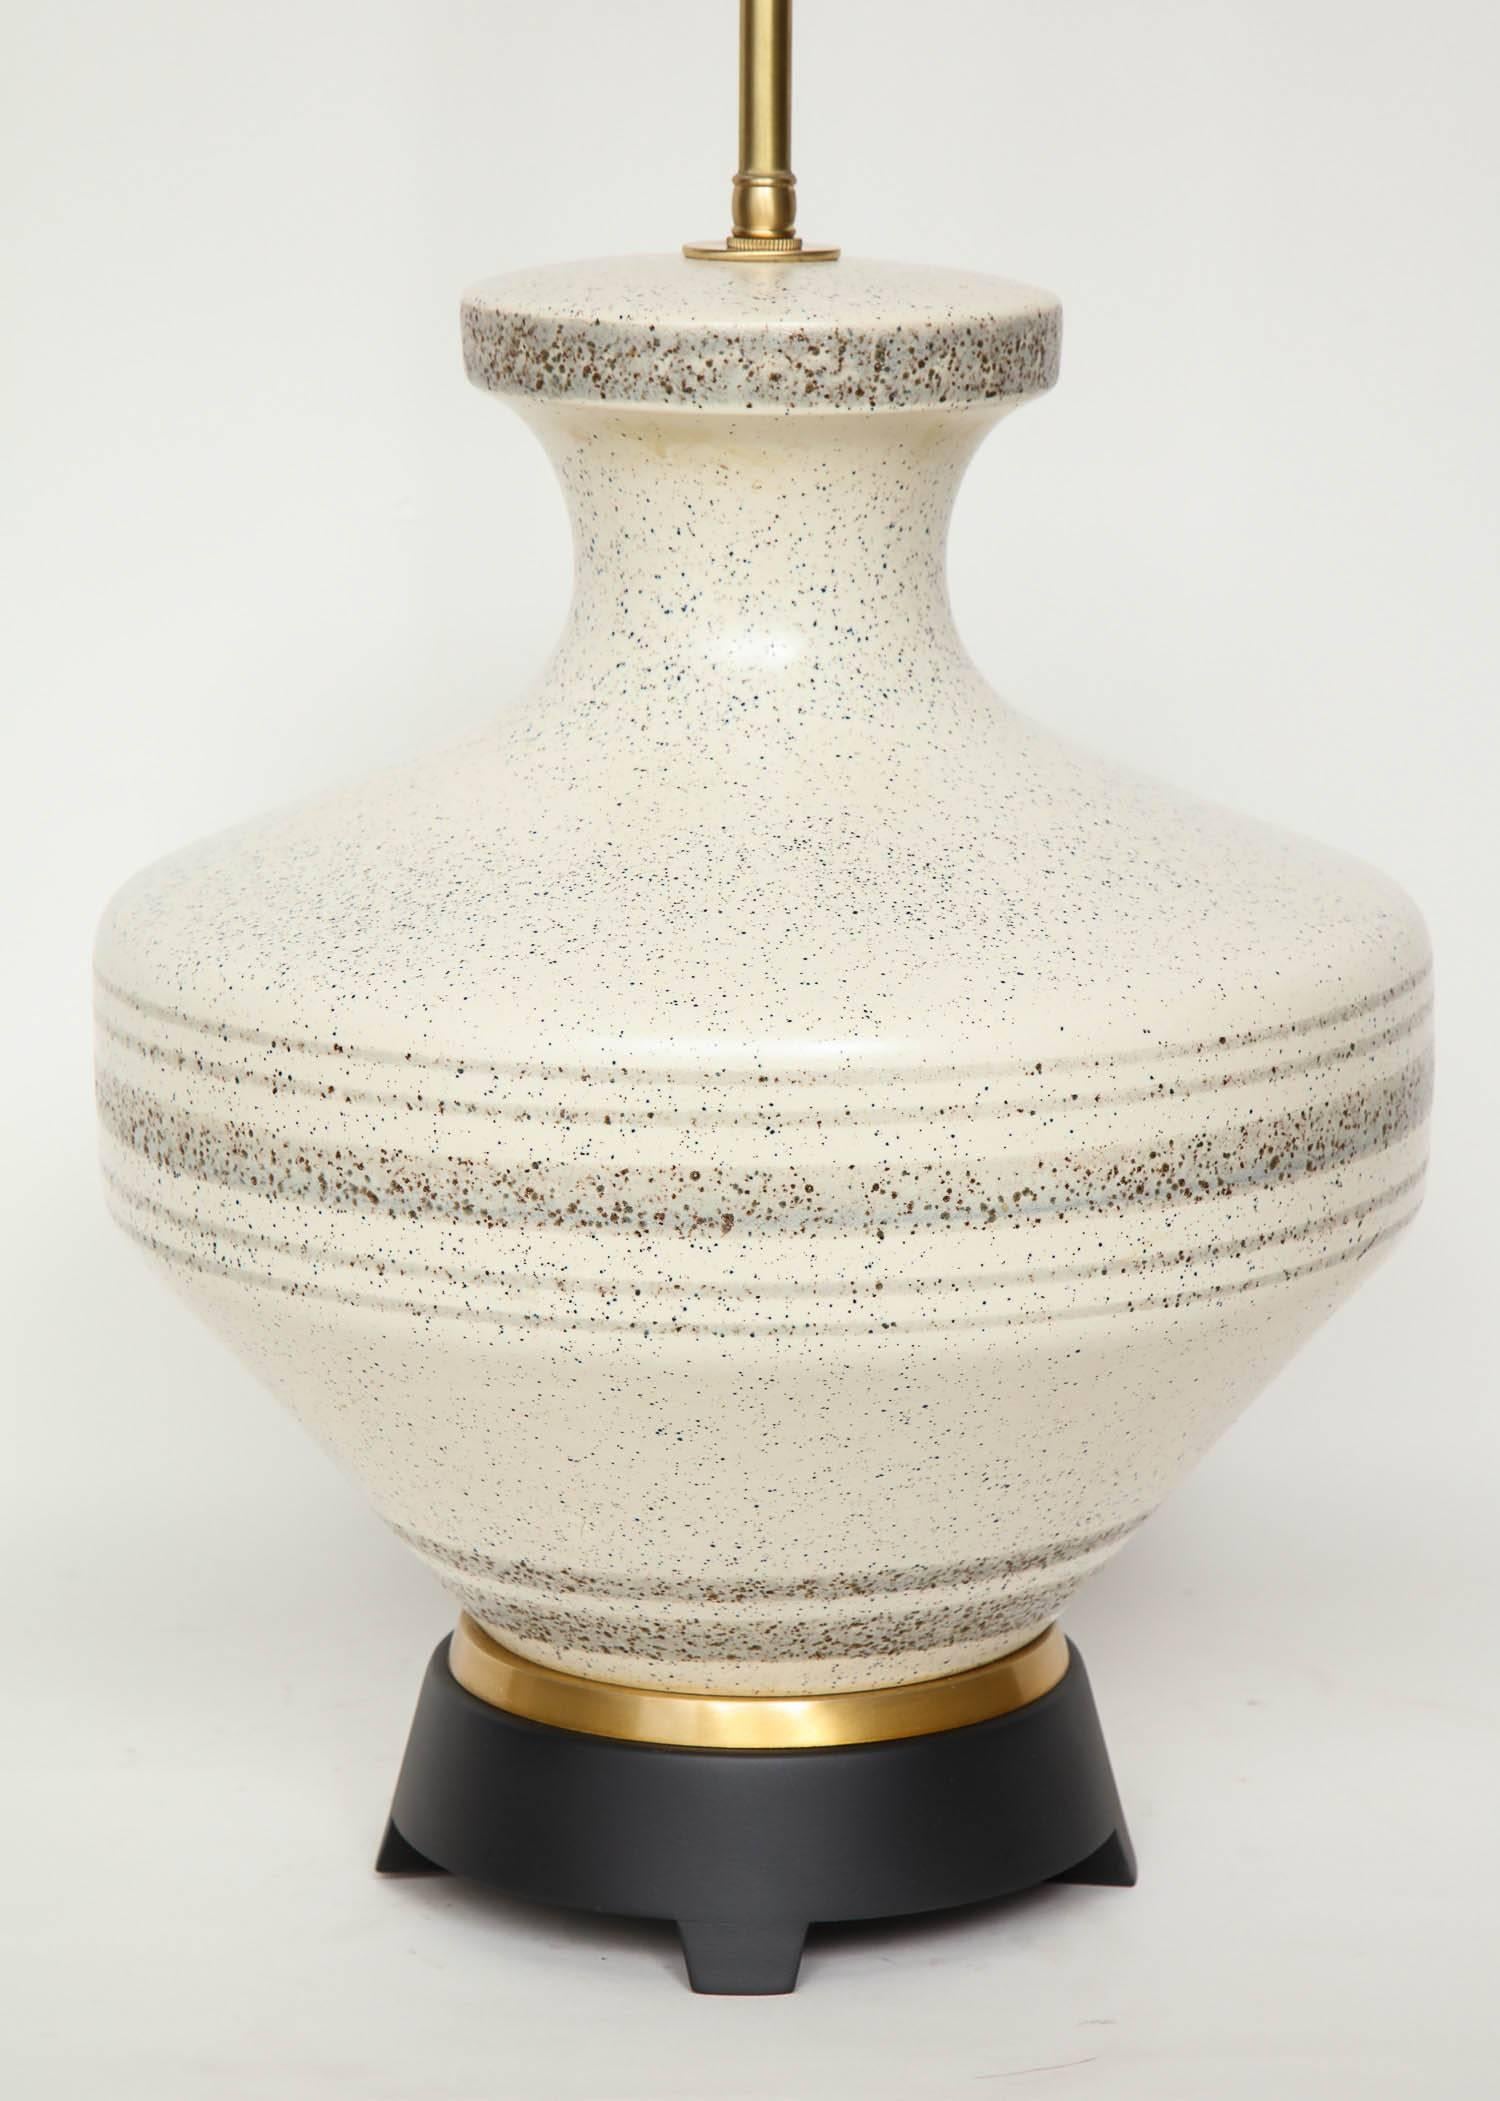 Wood Gerald Thurston Porcelain Lamps For Sale